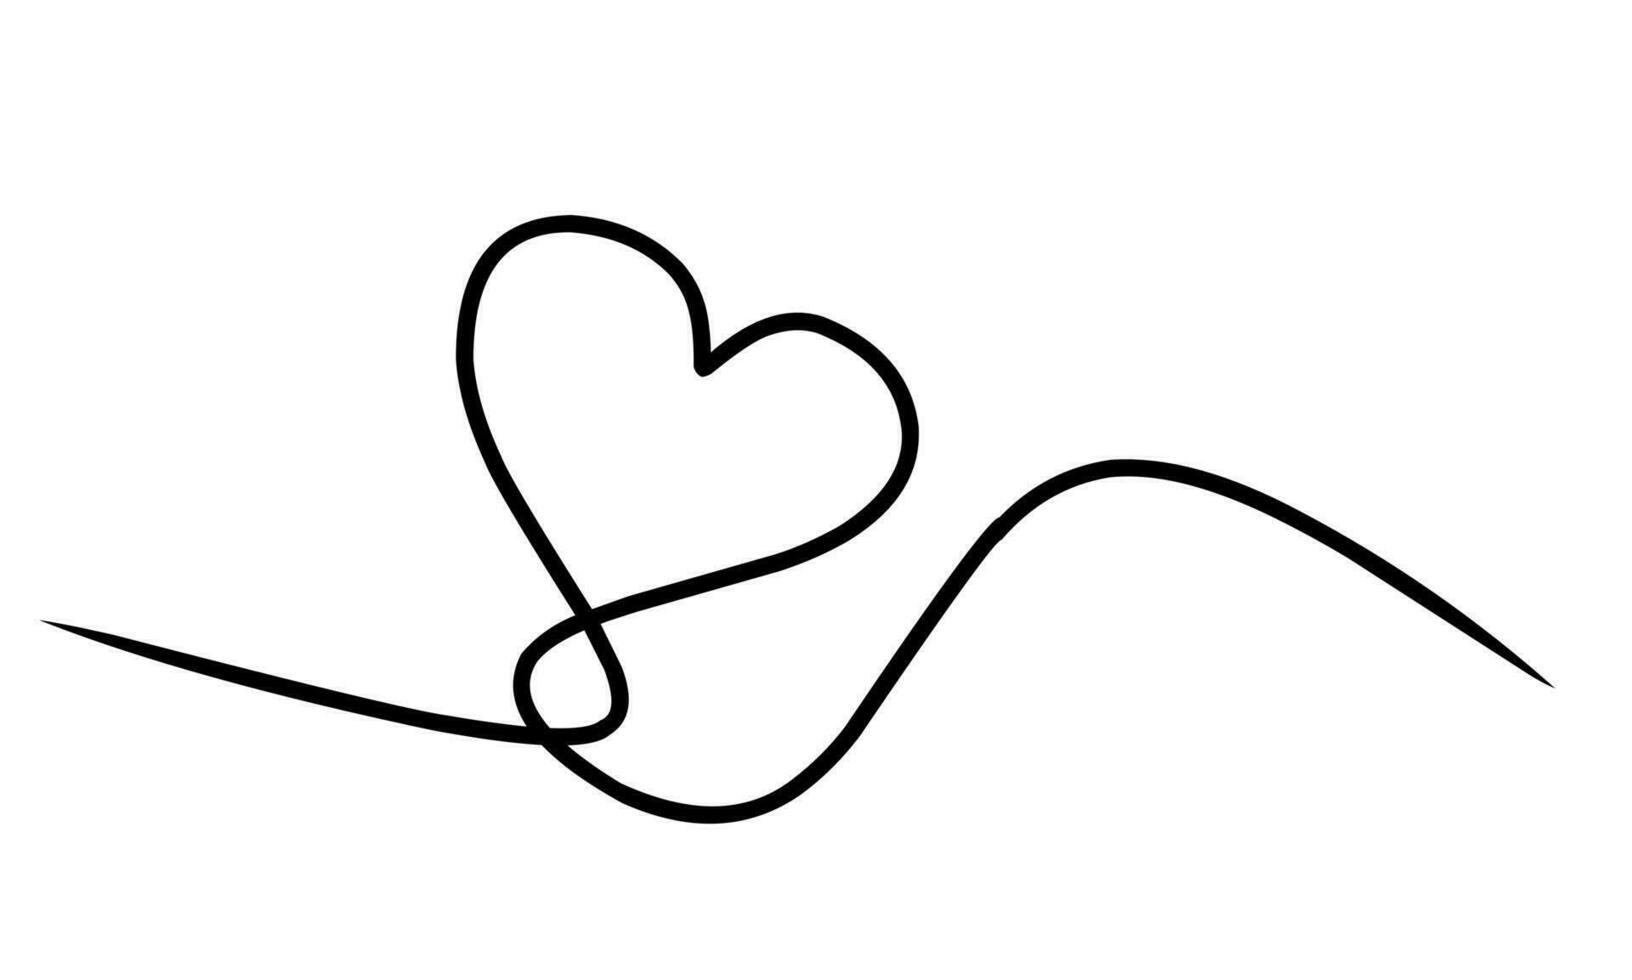 uno linea astratto cuore. di moda minimalista illustrazione di amore simbolo. contorno disegno stile vettore